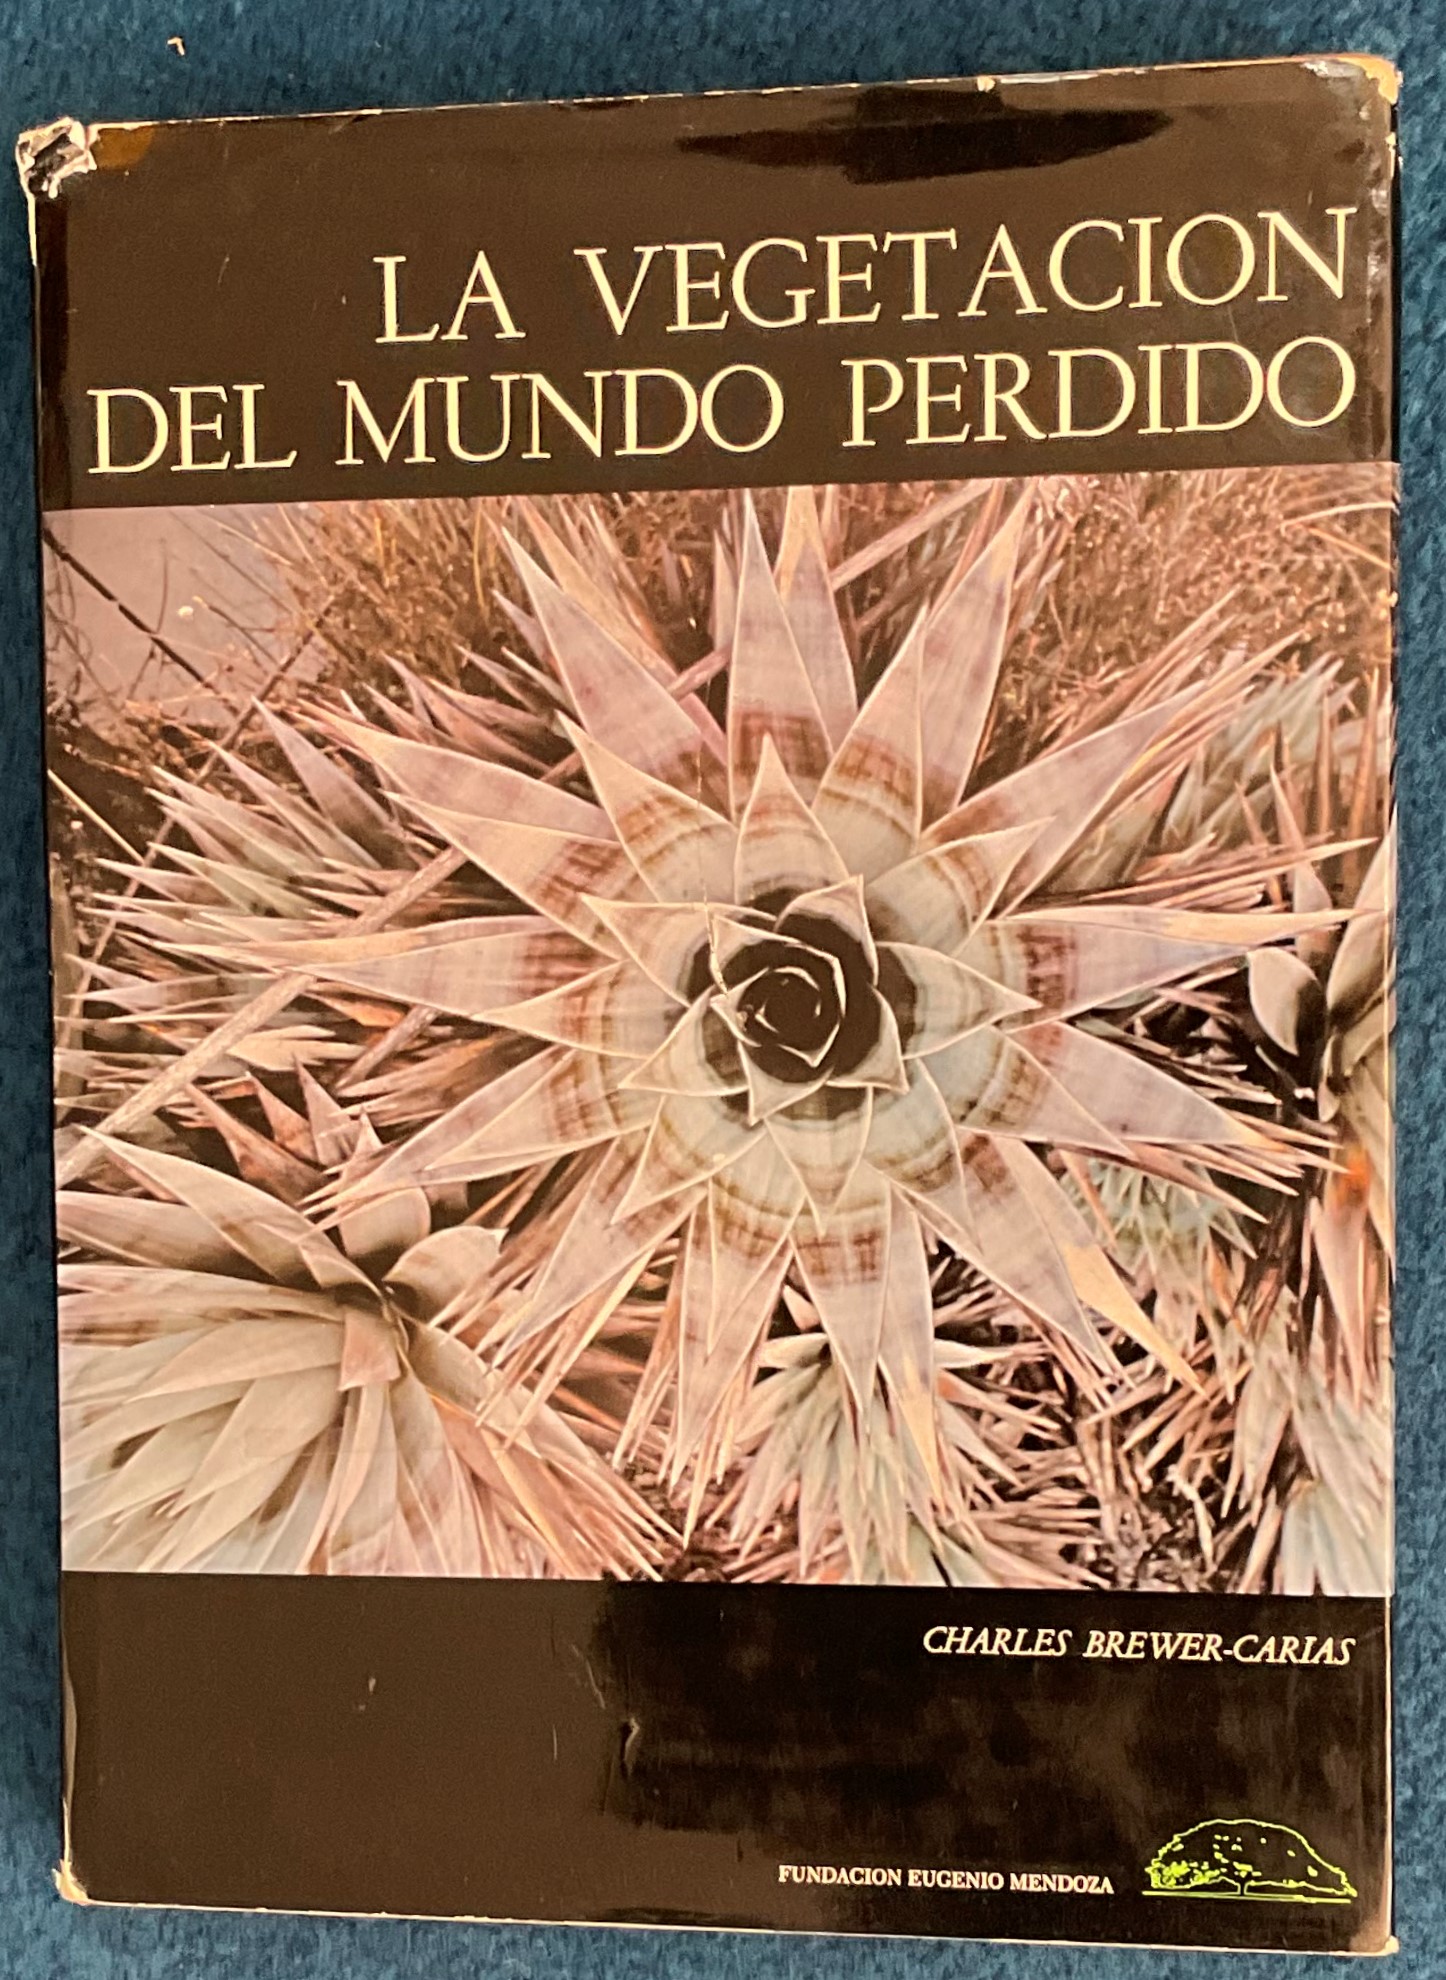 La Vegetacion Del Mundo Perdido by Charles Brewer Carias Hardback Book 1978 published by Fundacion